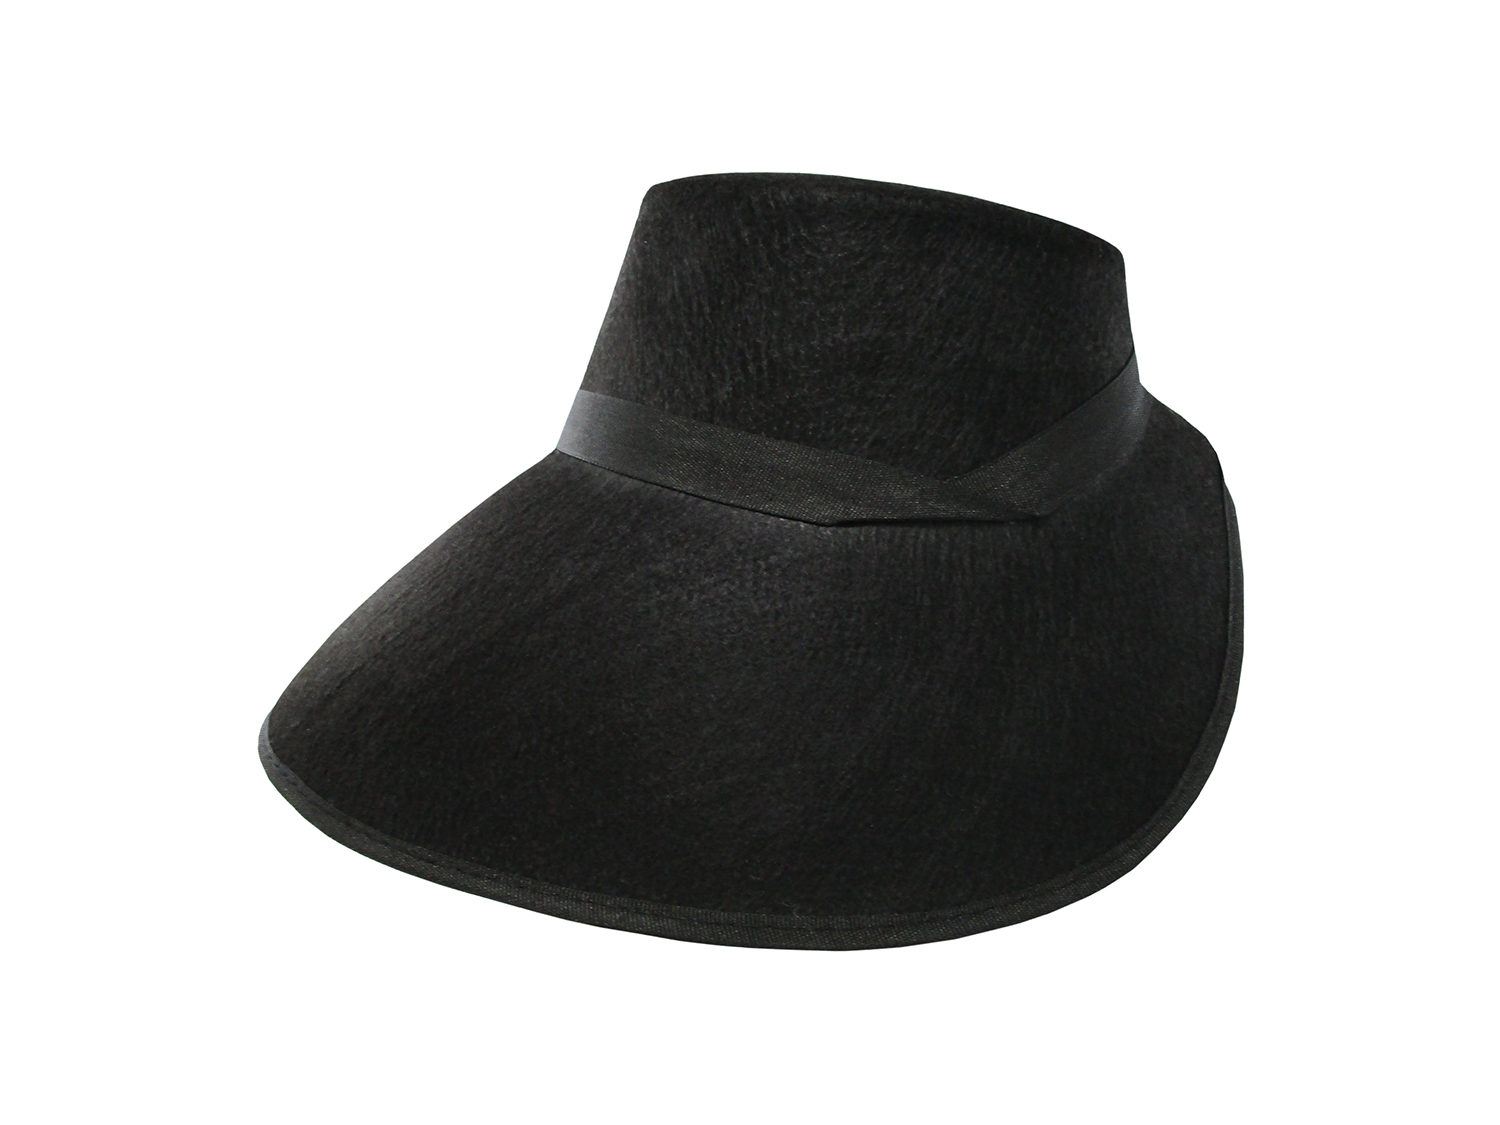 Adult Pilgrim Puritan Felt Victorian Bonnet Handmaids Frontier Costume Hat eBay